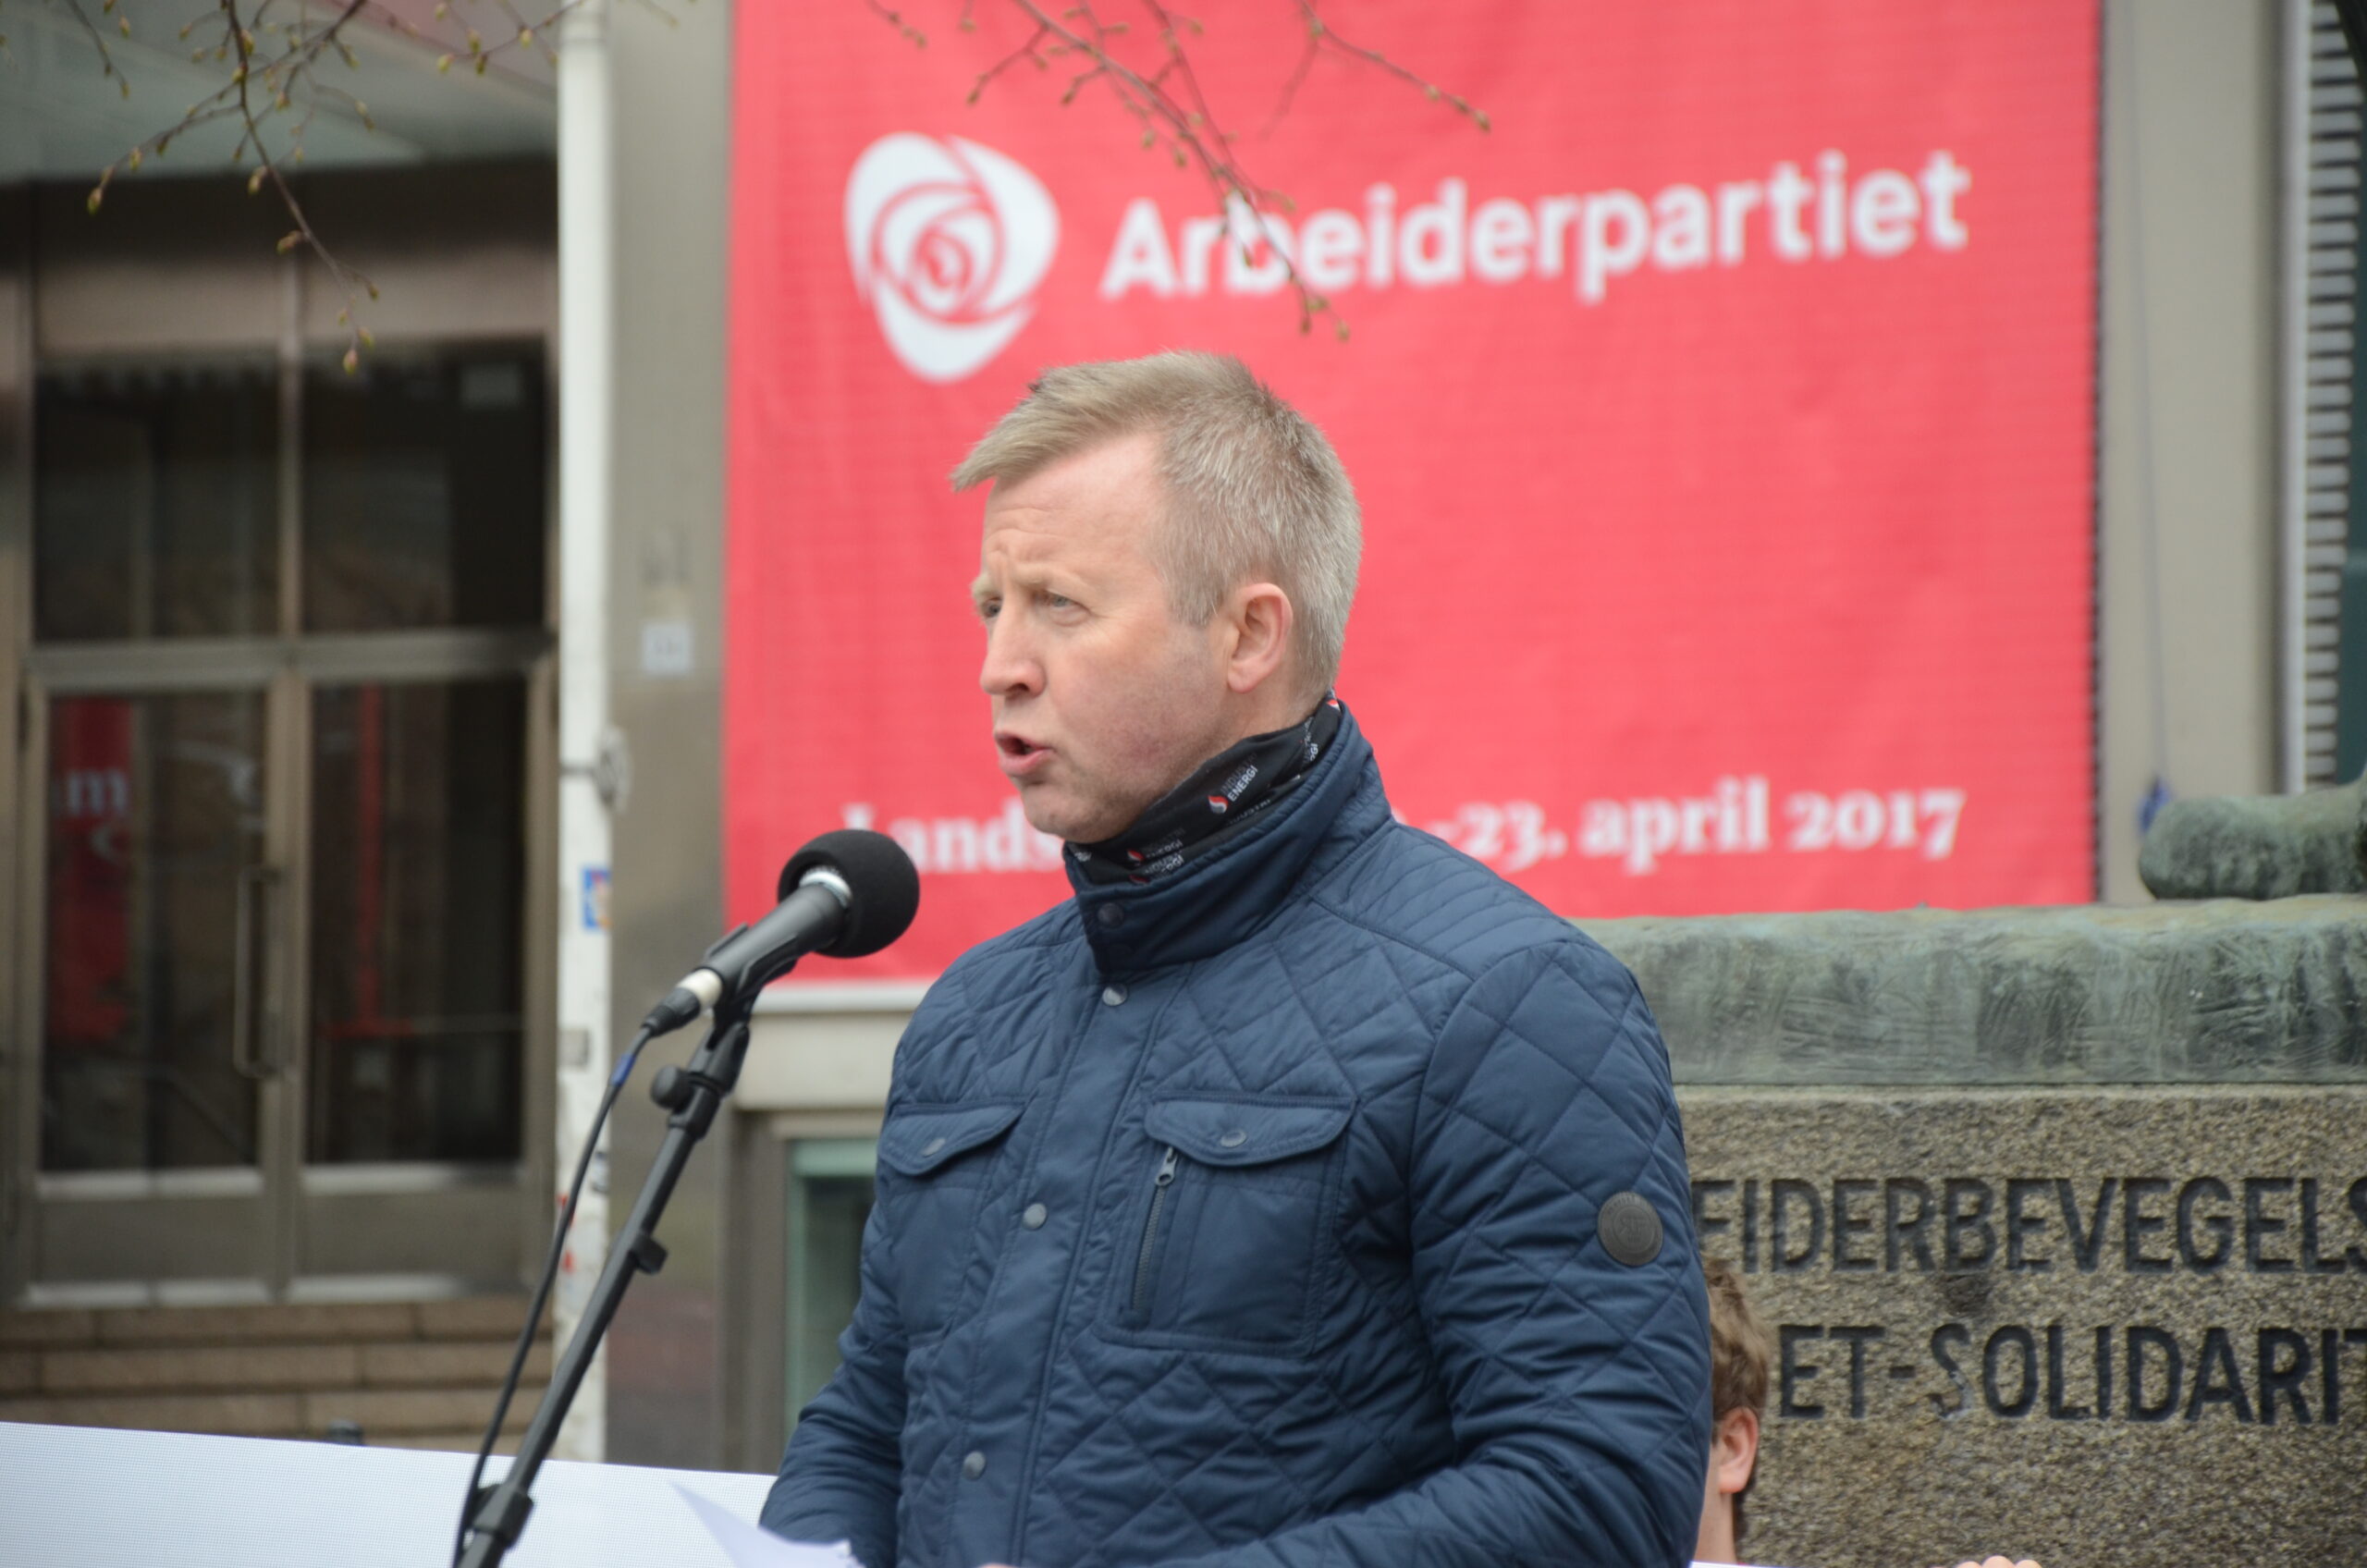 Nestleder Frode Alfheim i Industri Energi under sin tale på Youngstorget torsdag.